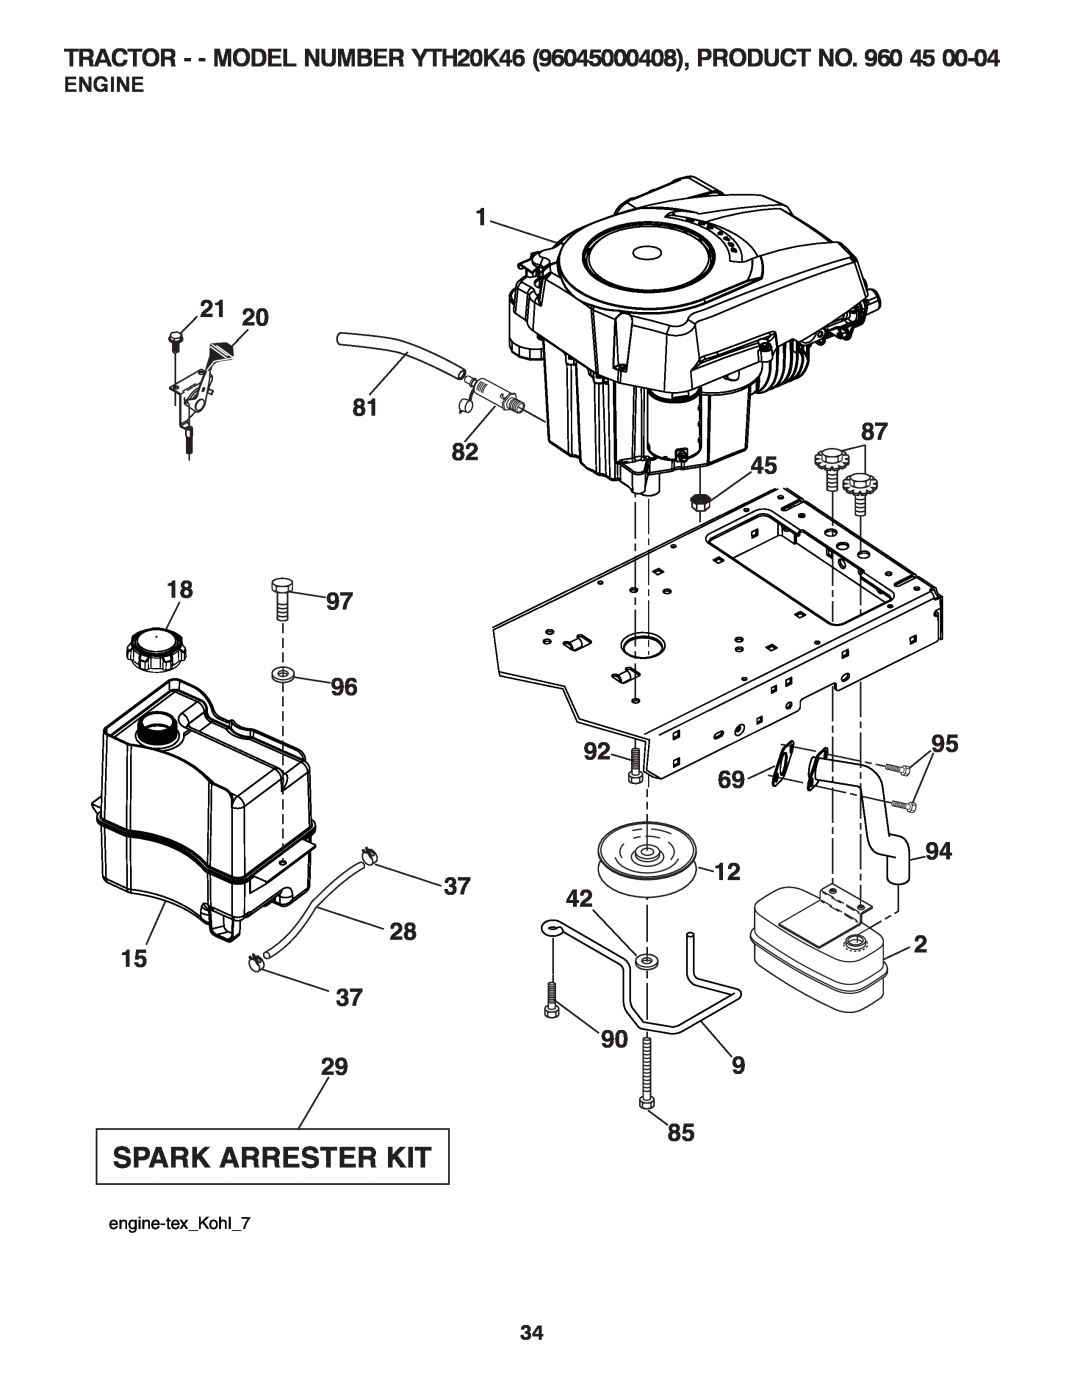 Husqvarna owner manual Engine, Spark Arrester Kit, TRACTOR - - MODEL NUMBER YTH20K46 96045000408, PRODUCT NO. 960 45 